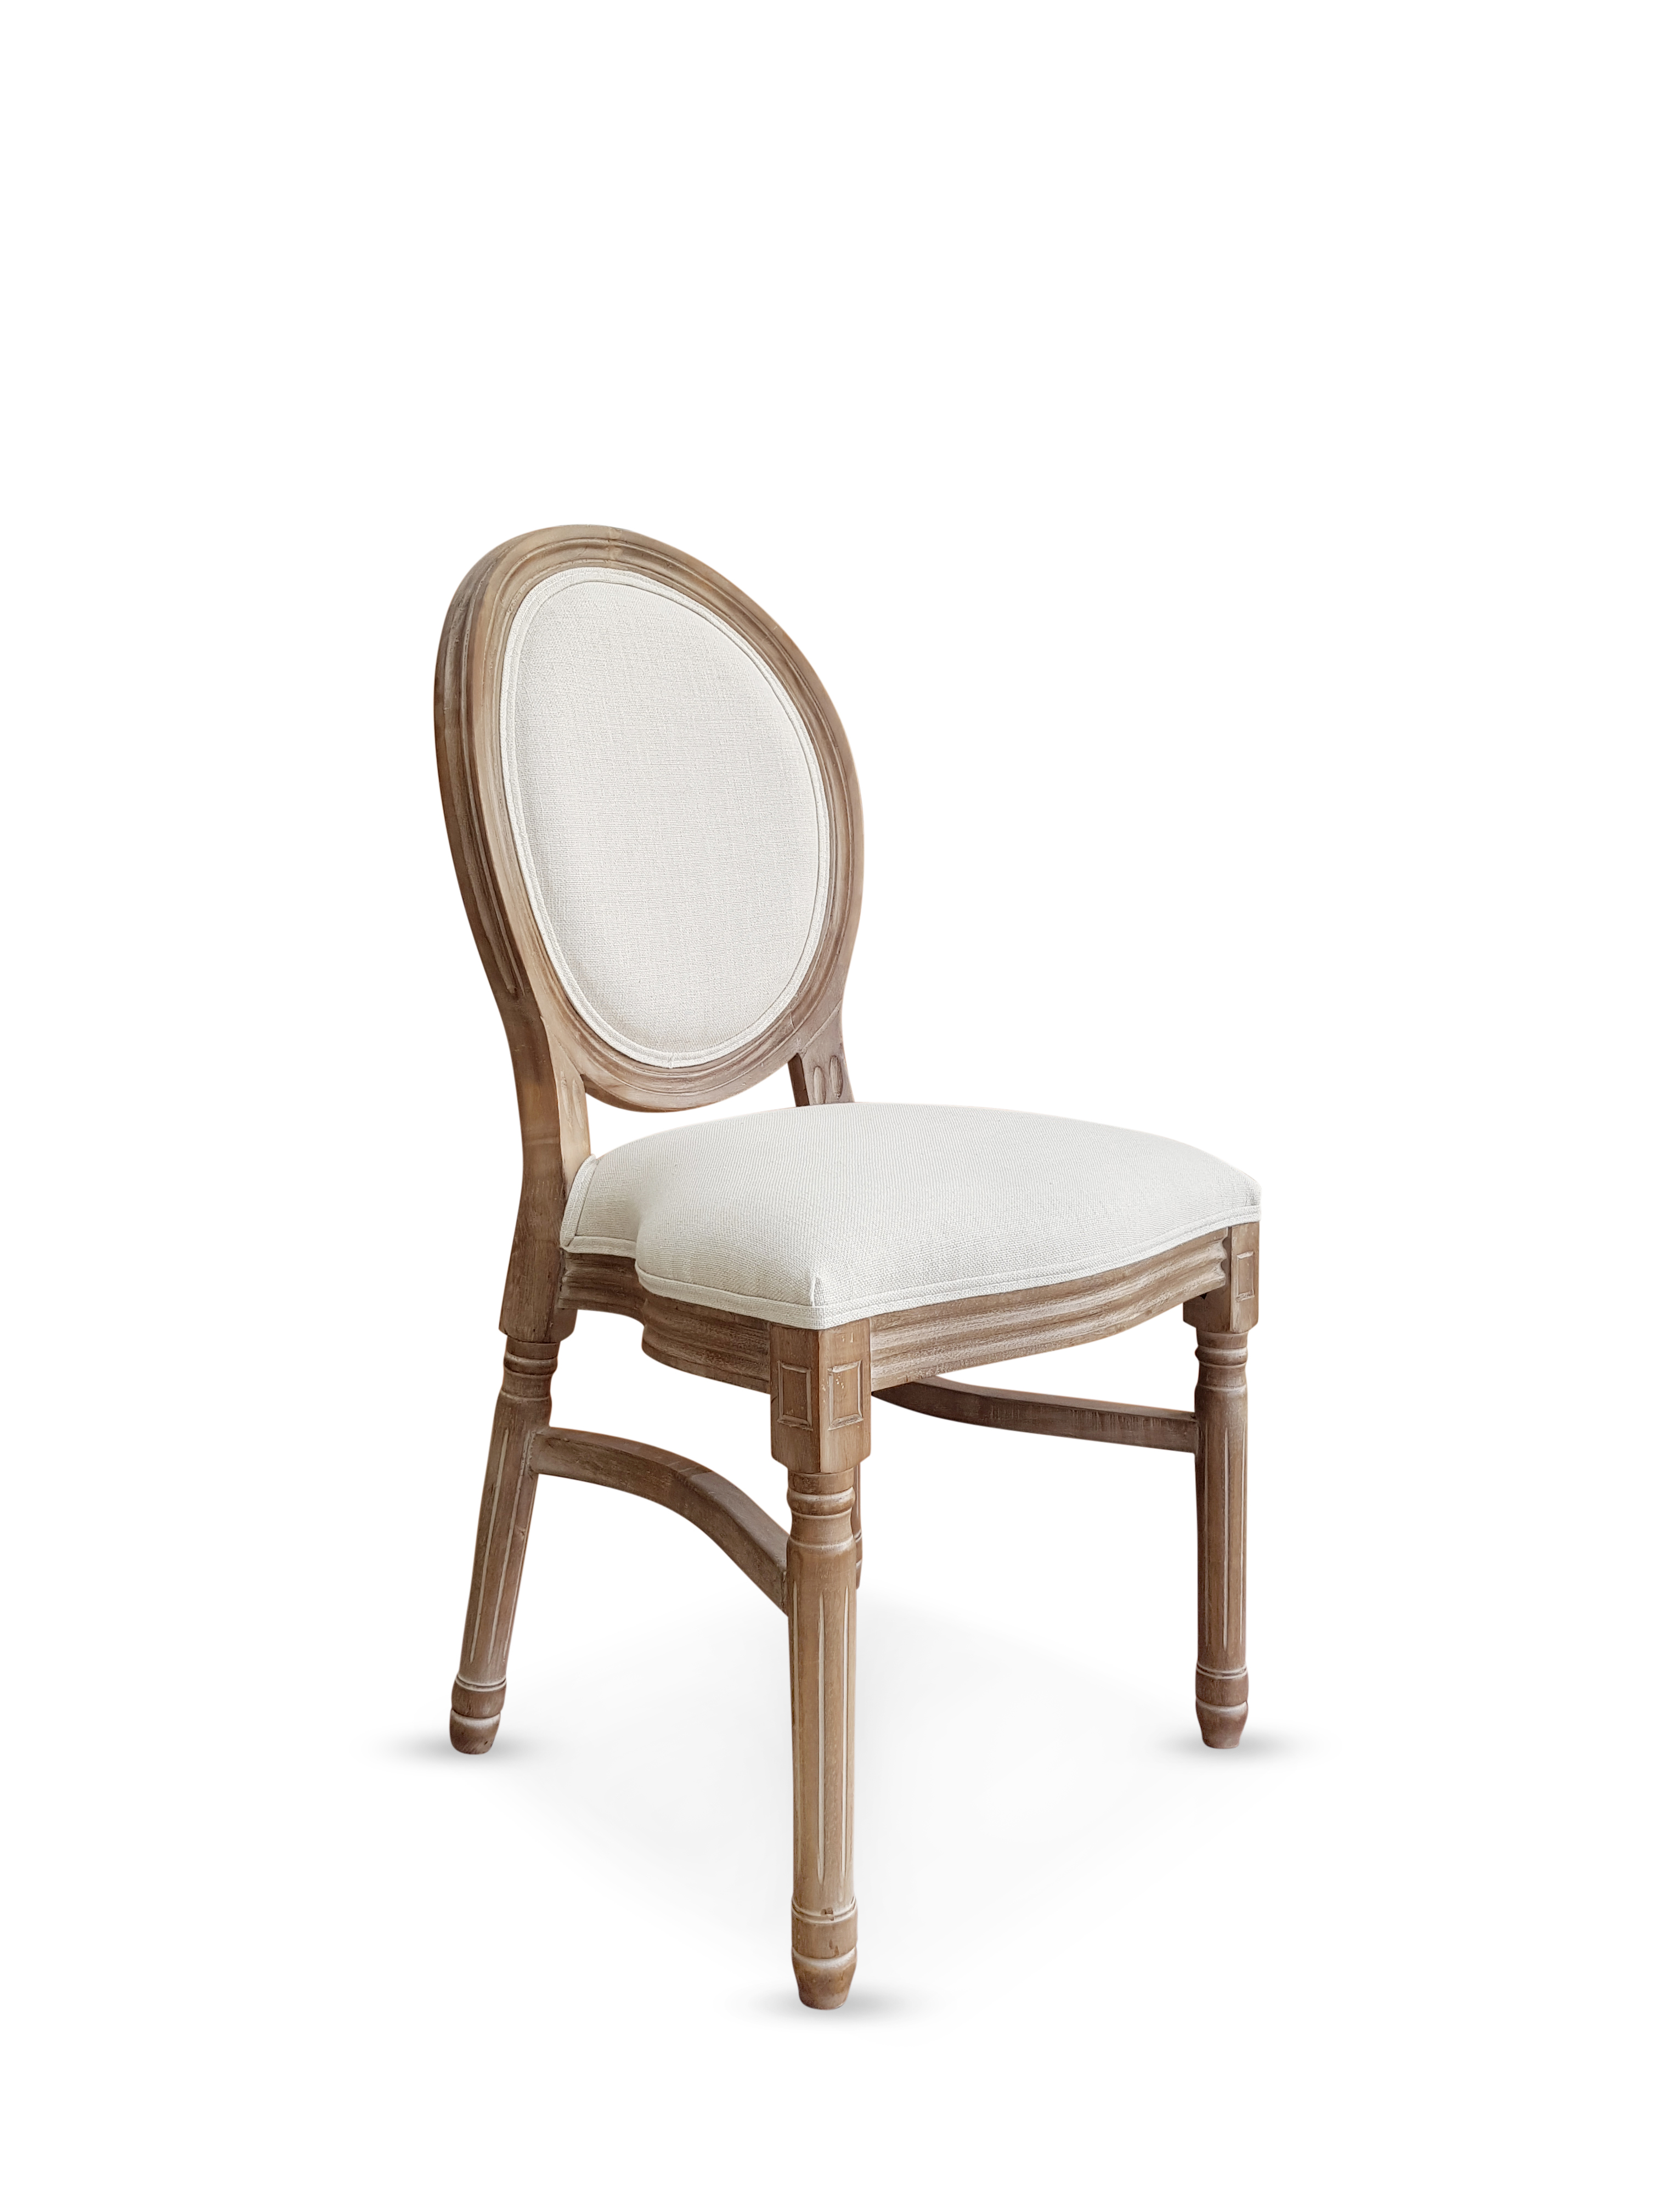 Limewash King Louis Chair light wood rental chair